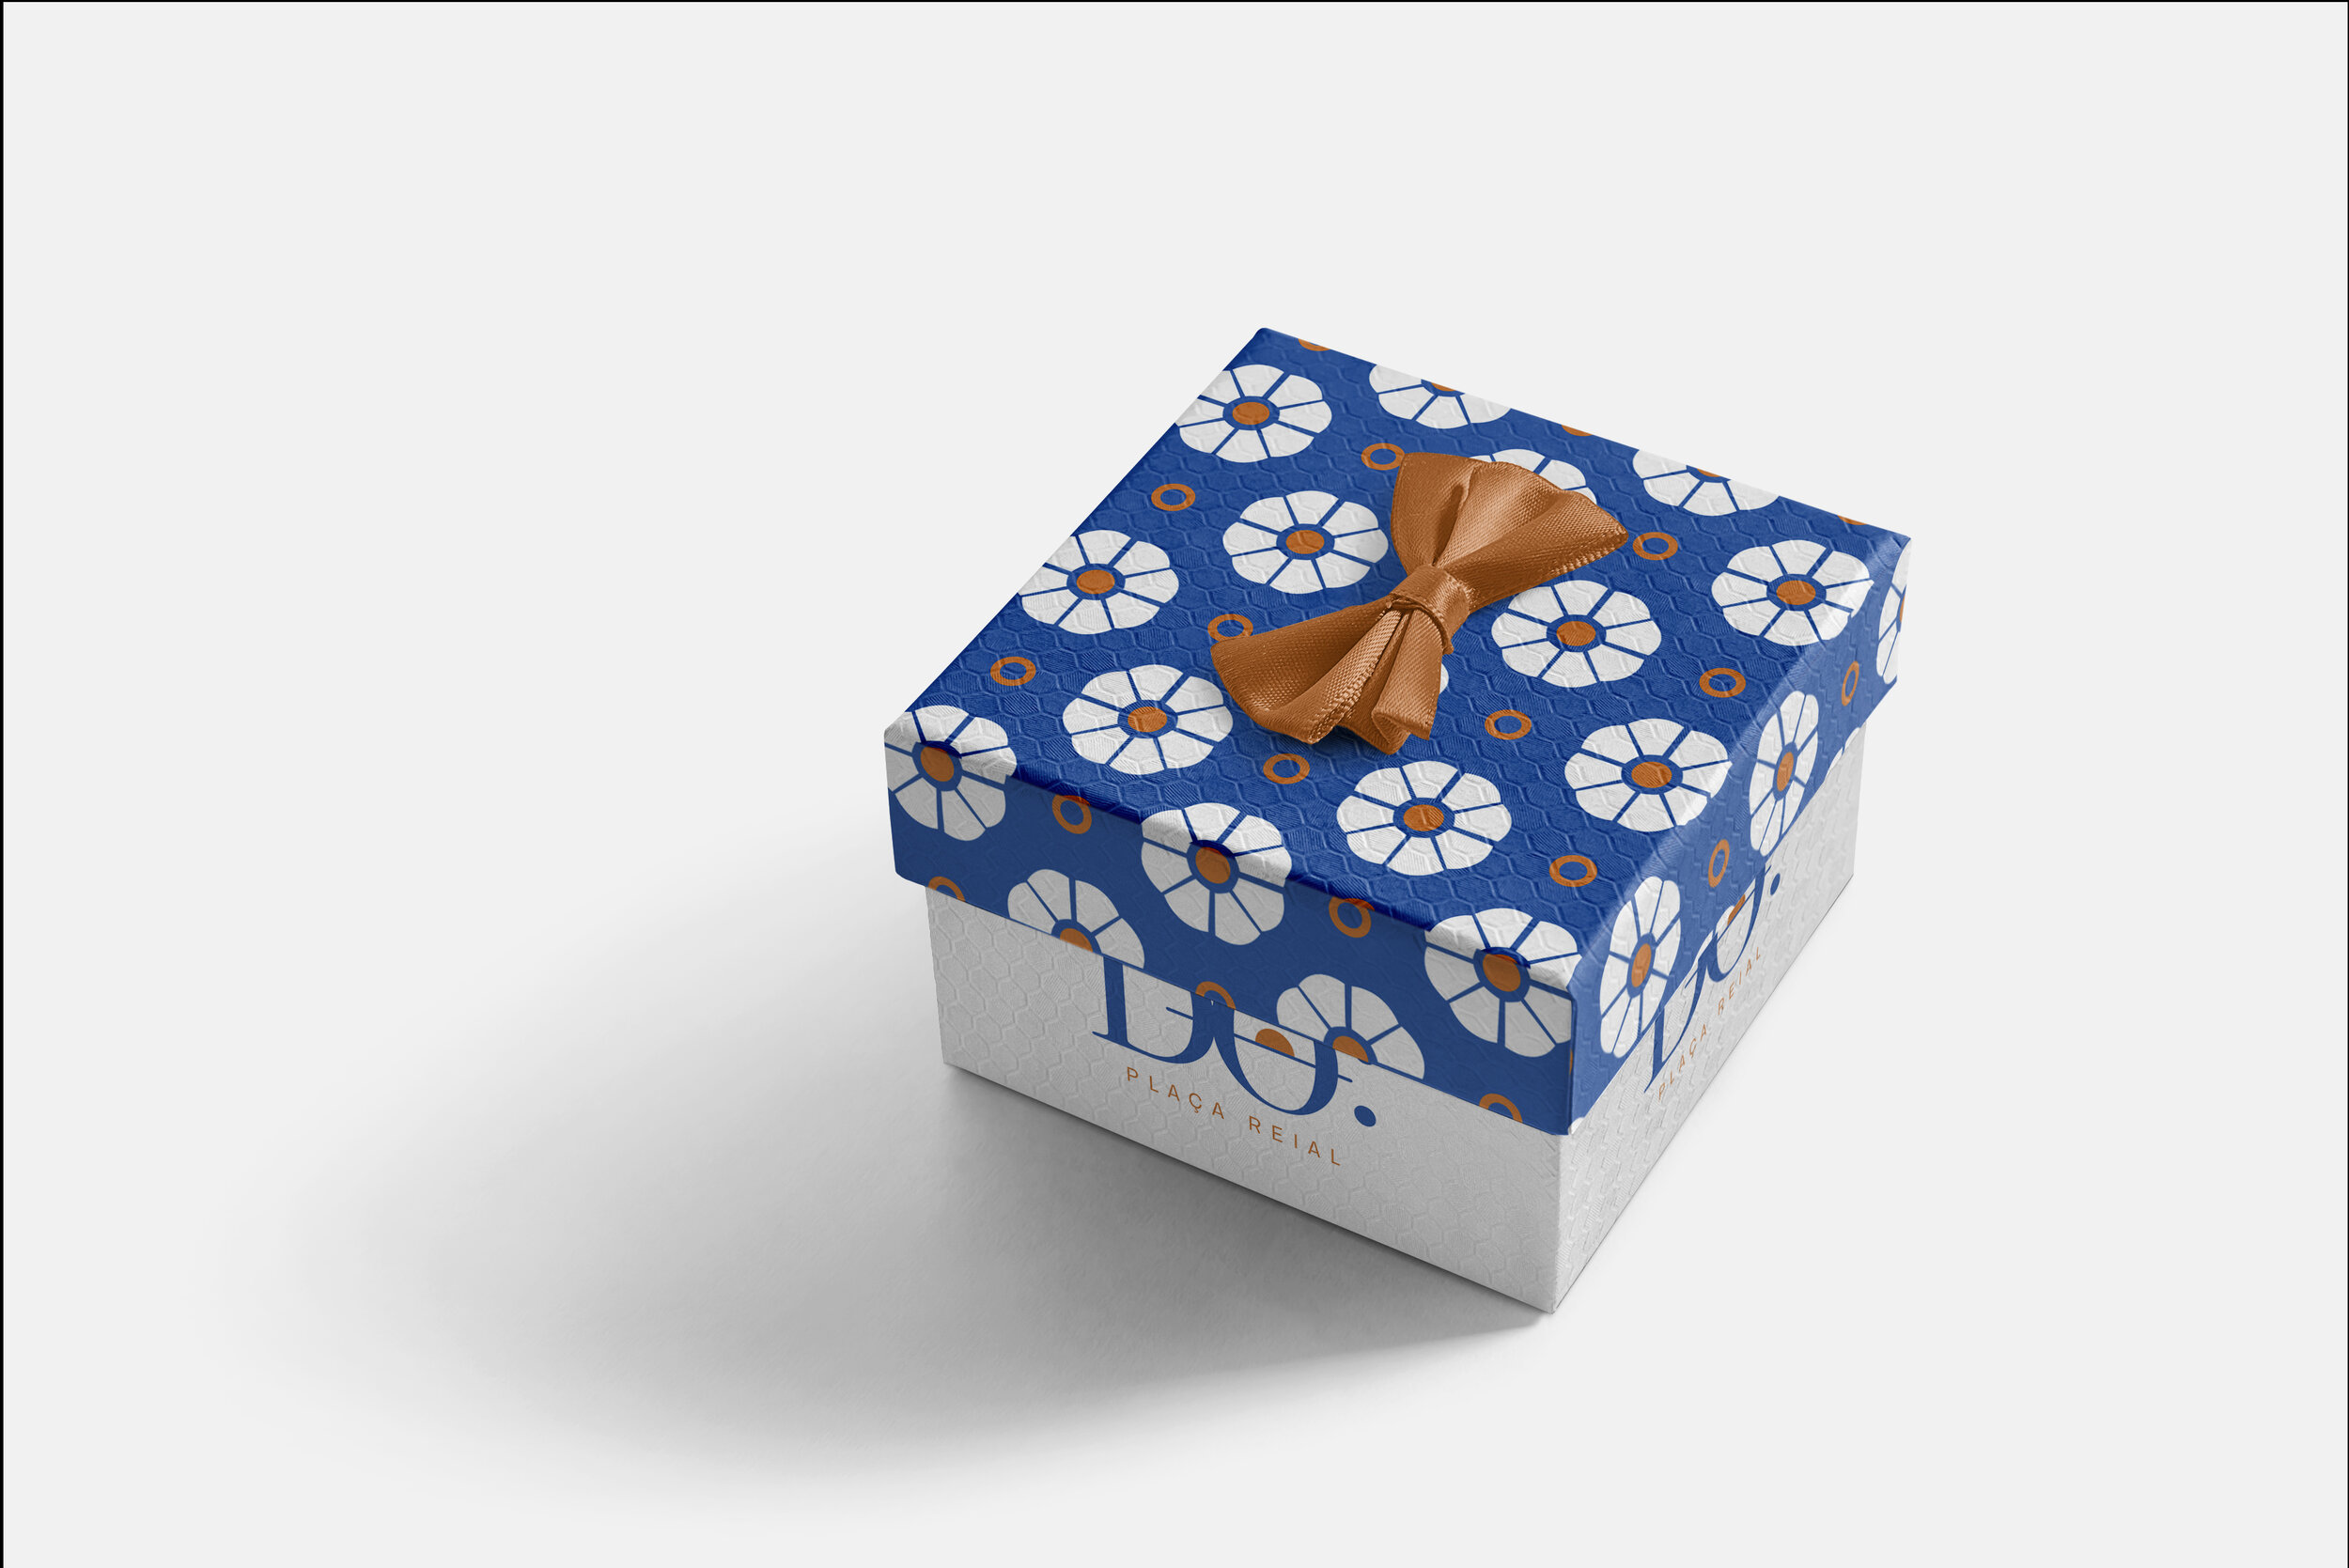 DO gift box4.jpg